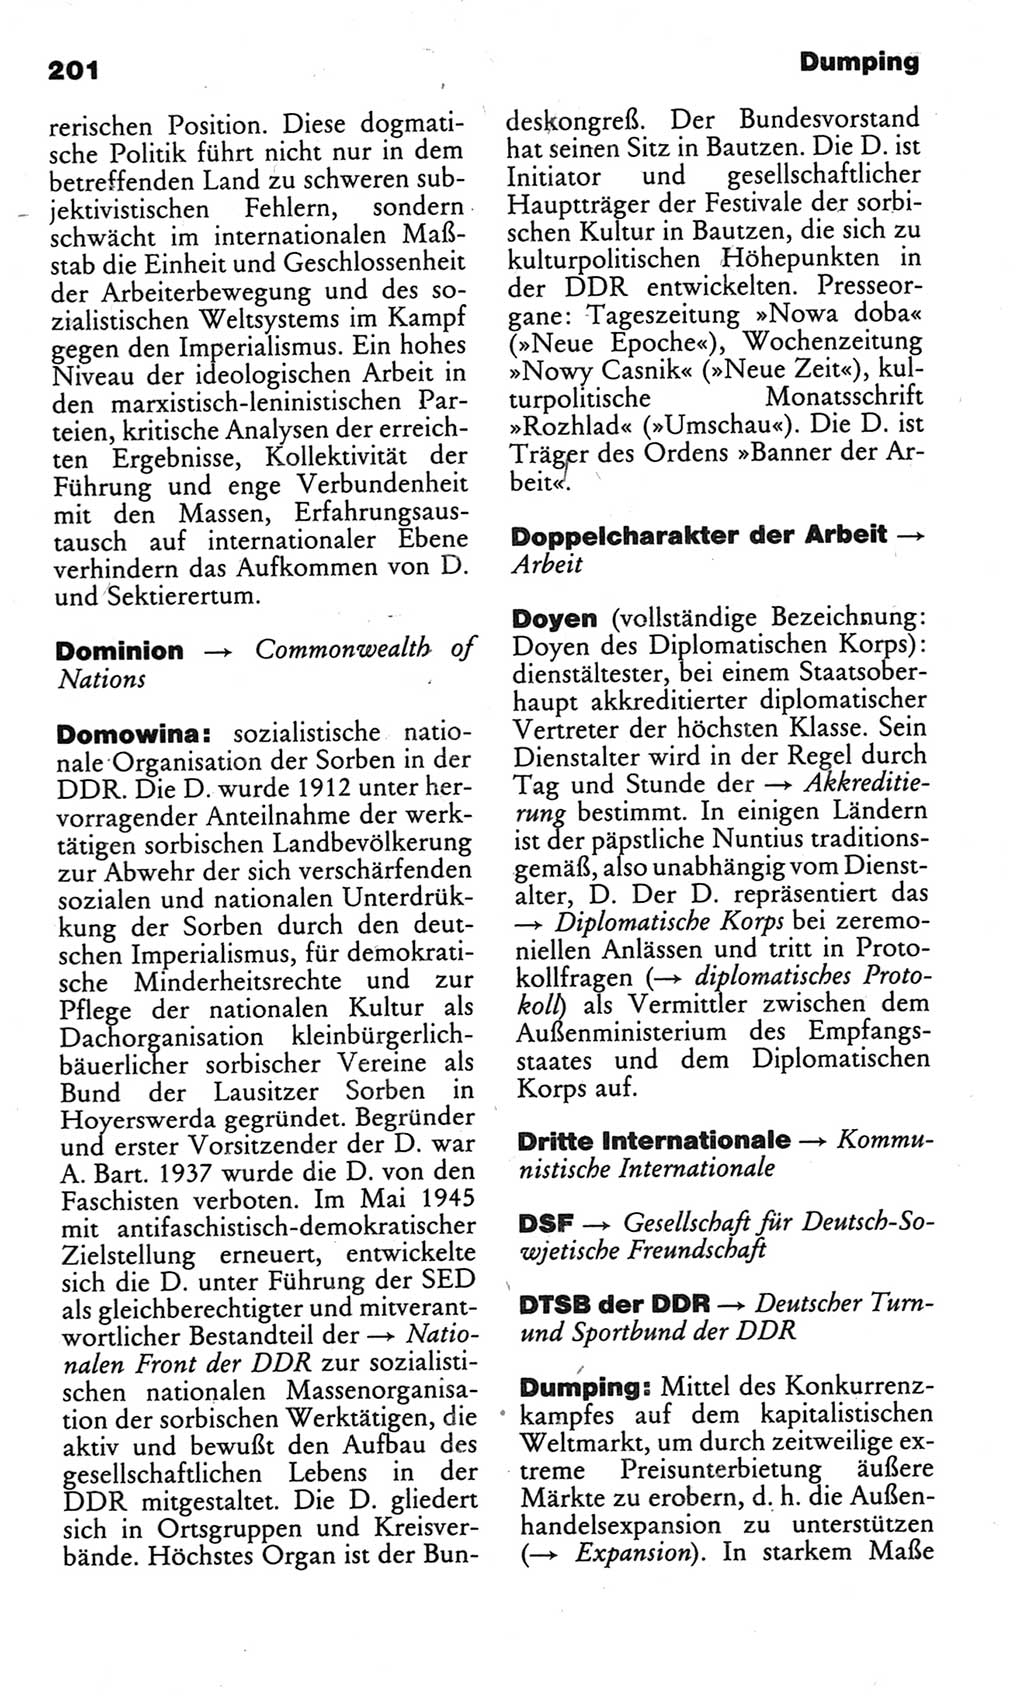 Kleines politisches Wörterbuch [Deutsche Demokratische Republik (DDR)] 1983, Seite 201 (Kl. pol. Wb. DDR 1983, S. 201)